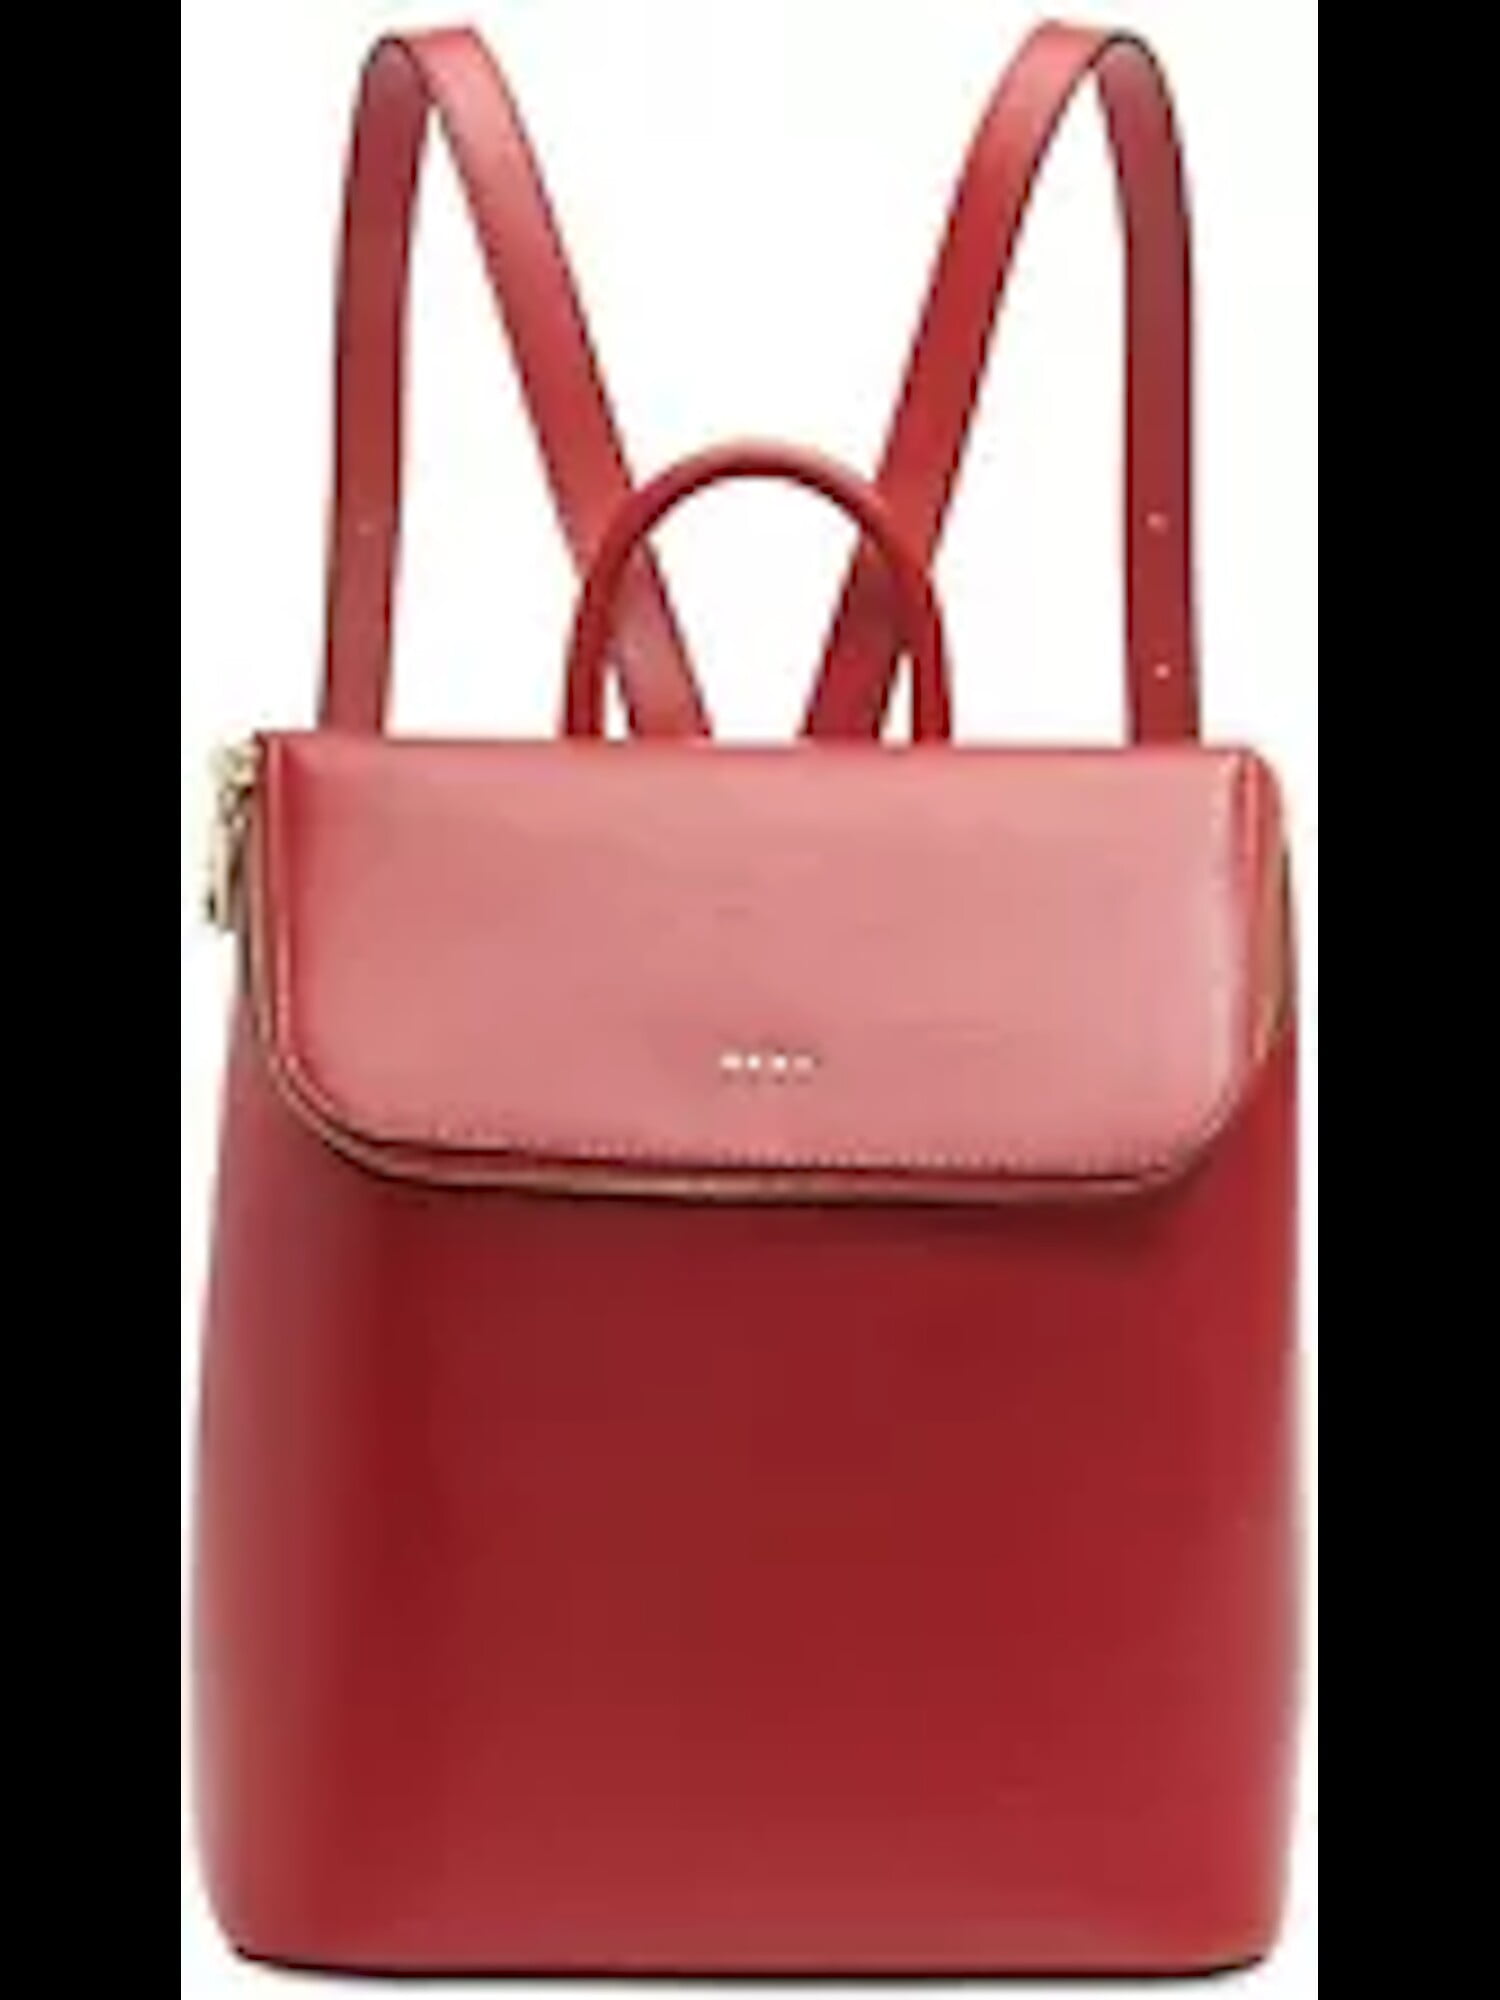 DKNY Bryant Park Leather Shoulder Bag, Red